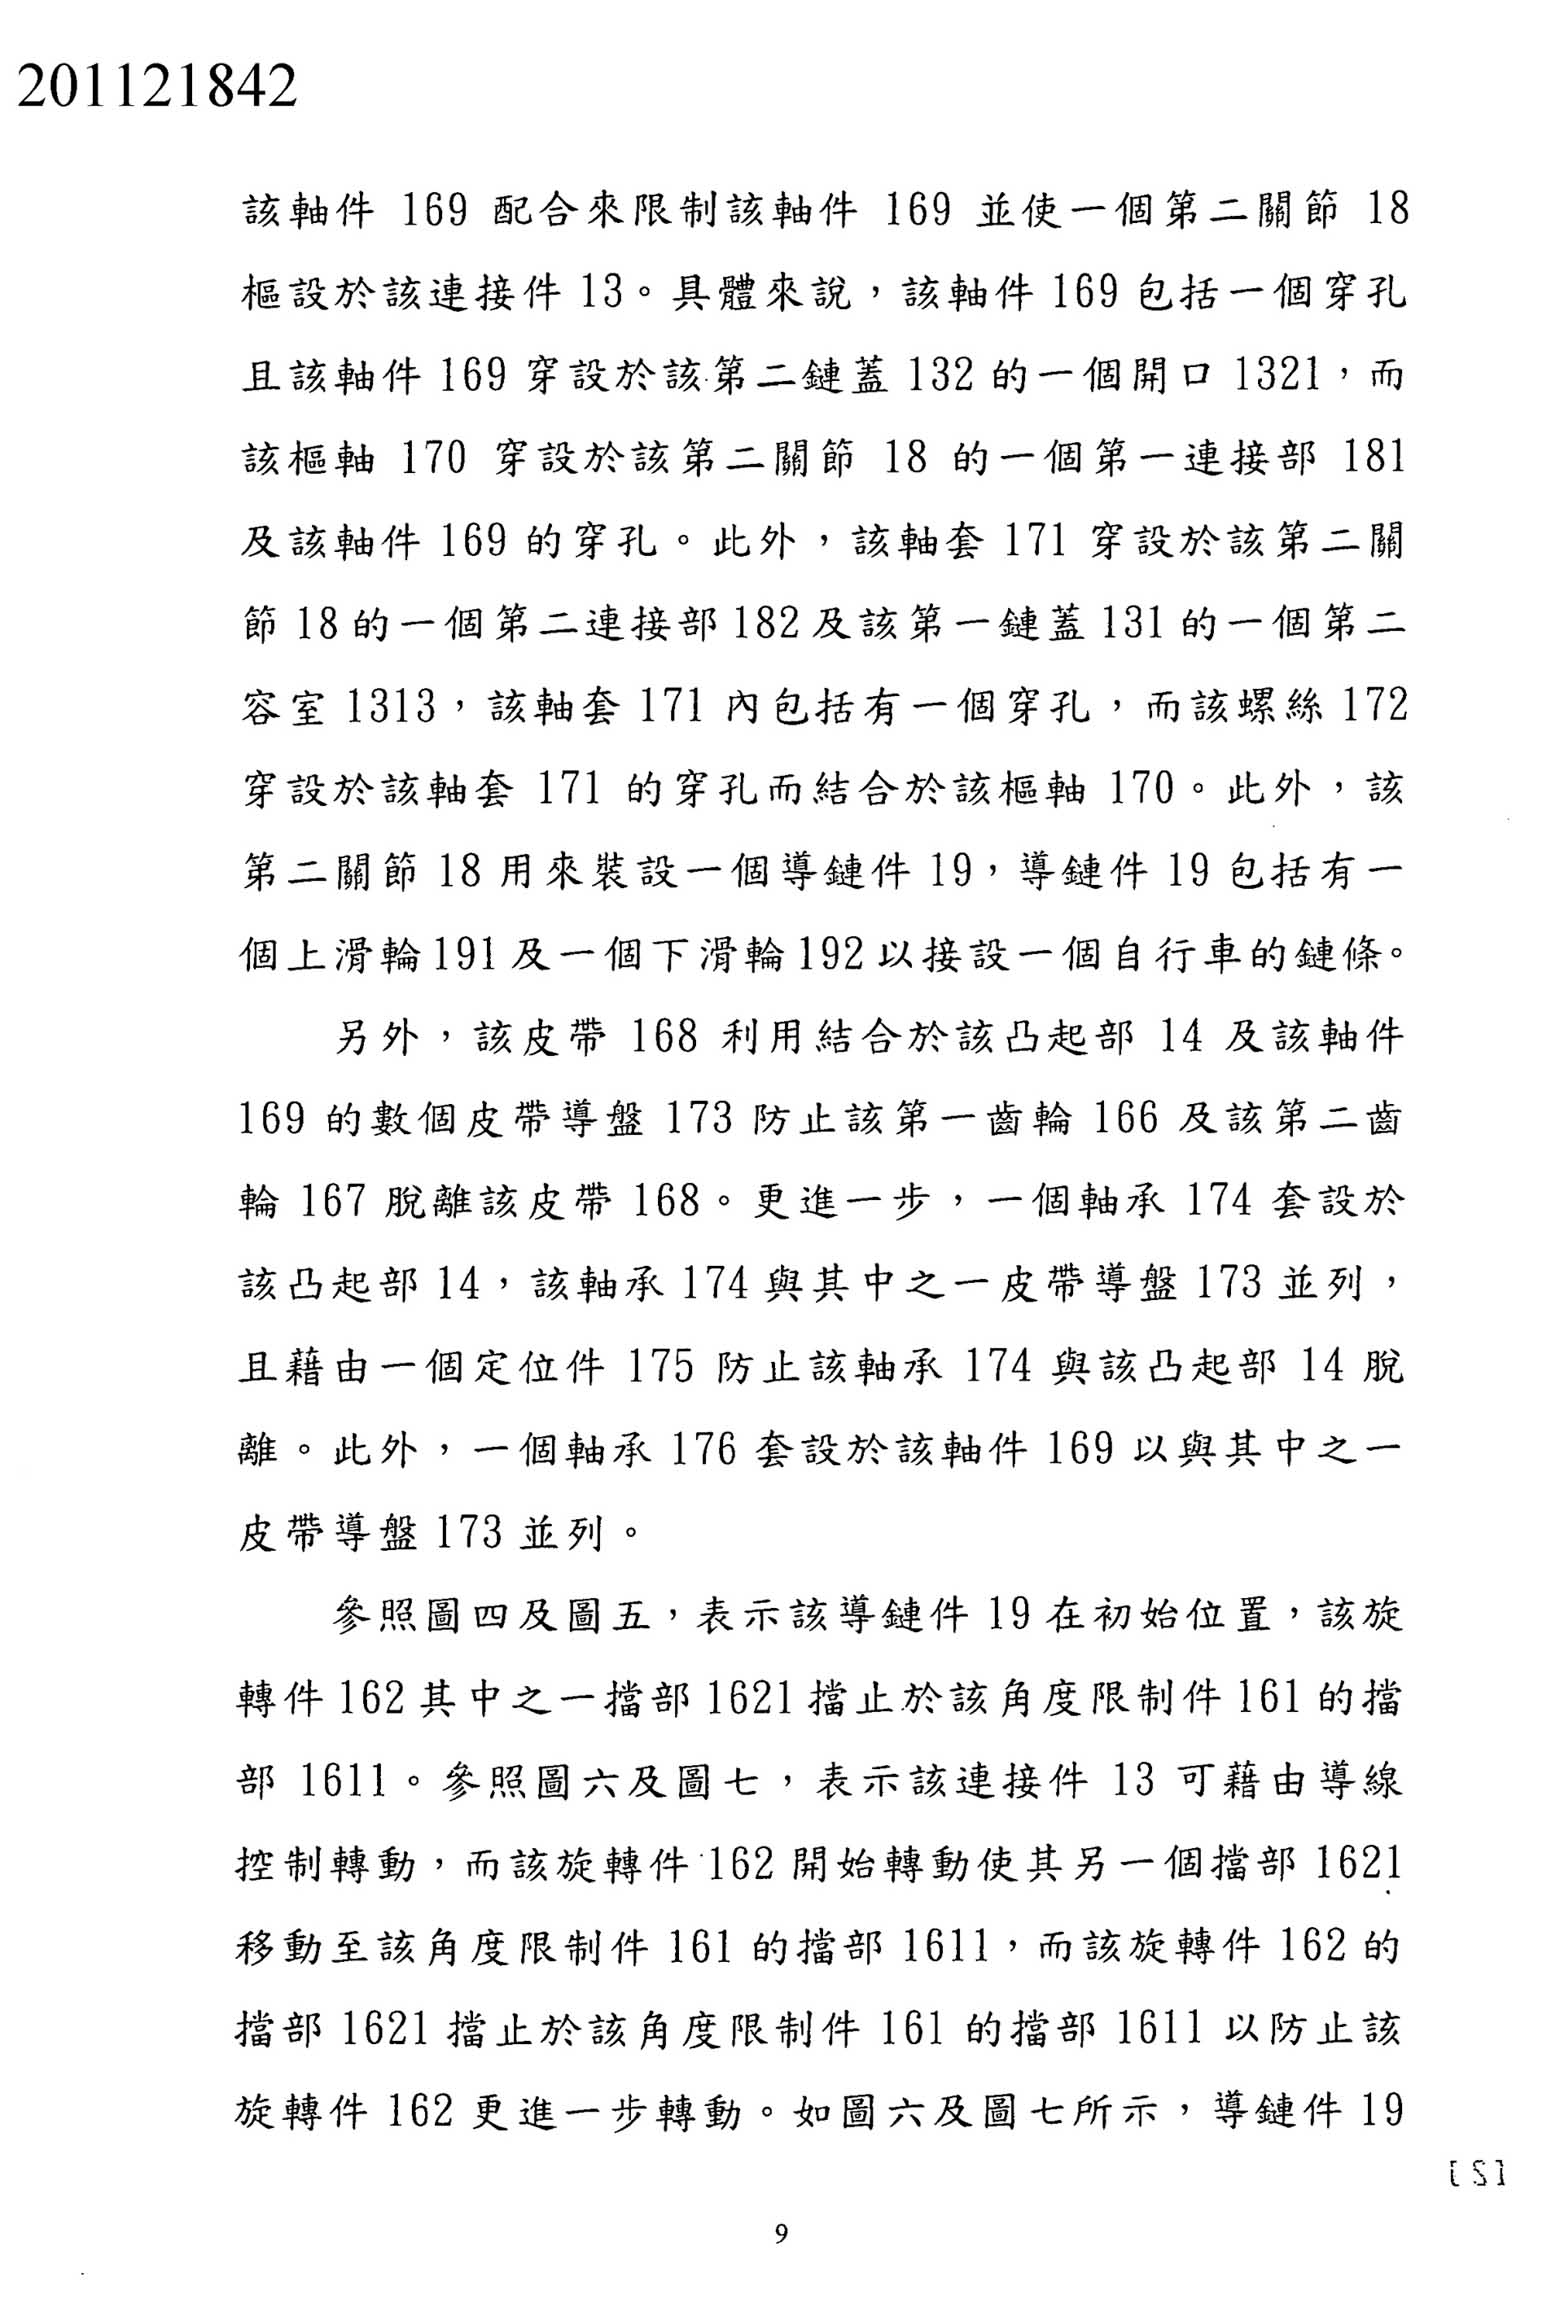 Taiwanese Patent 201121842 - FSA scan 9 main image